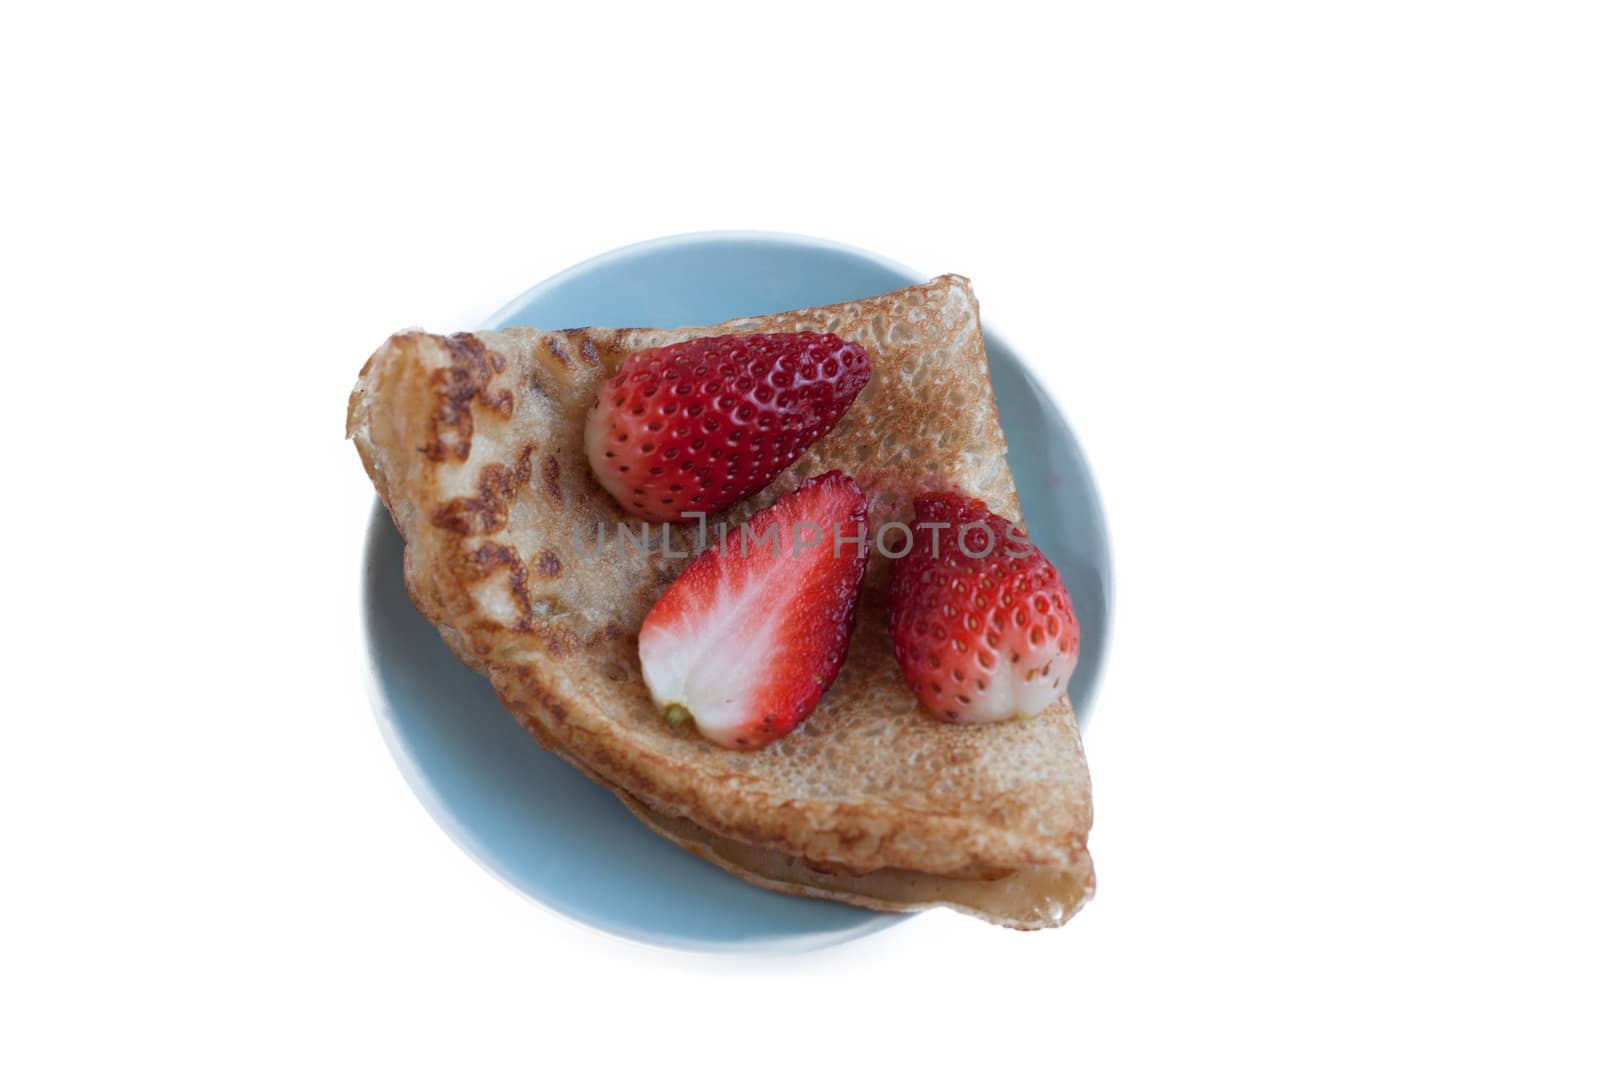 Pancake with strawberries and jam by raduga21